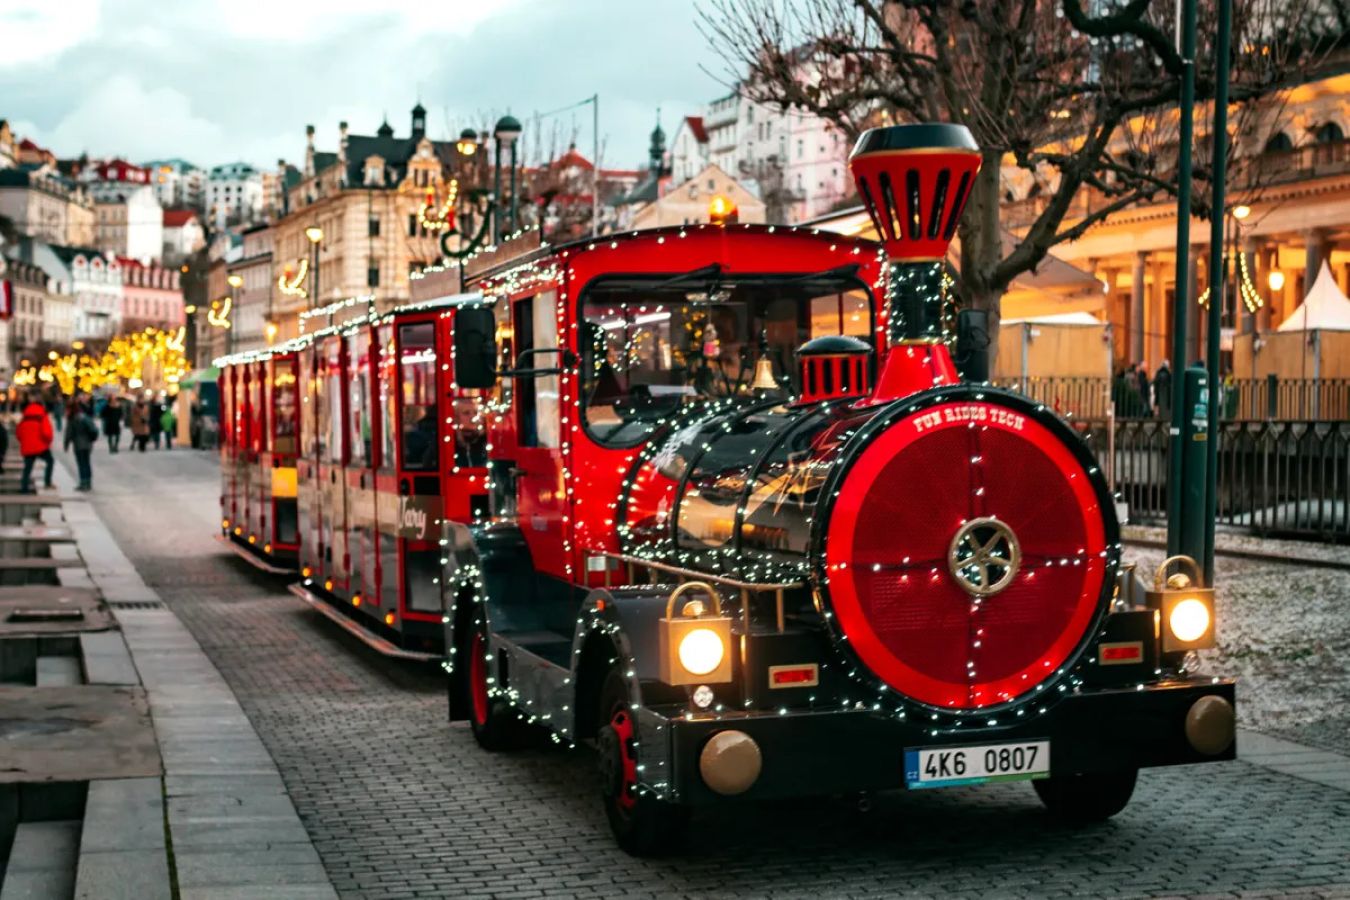 Vydejte se za kouzelnou atmosférou Vánoc na nejkrásnější adventní trhy nejen v Česku!